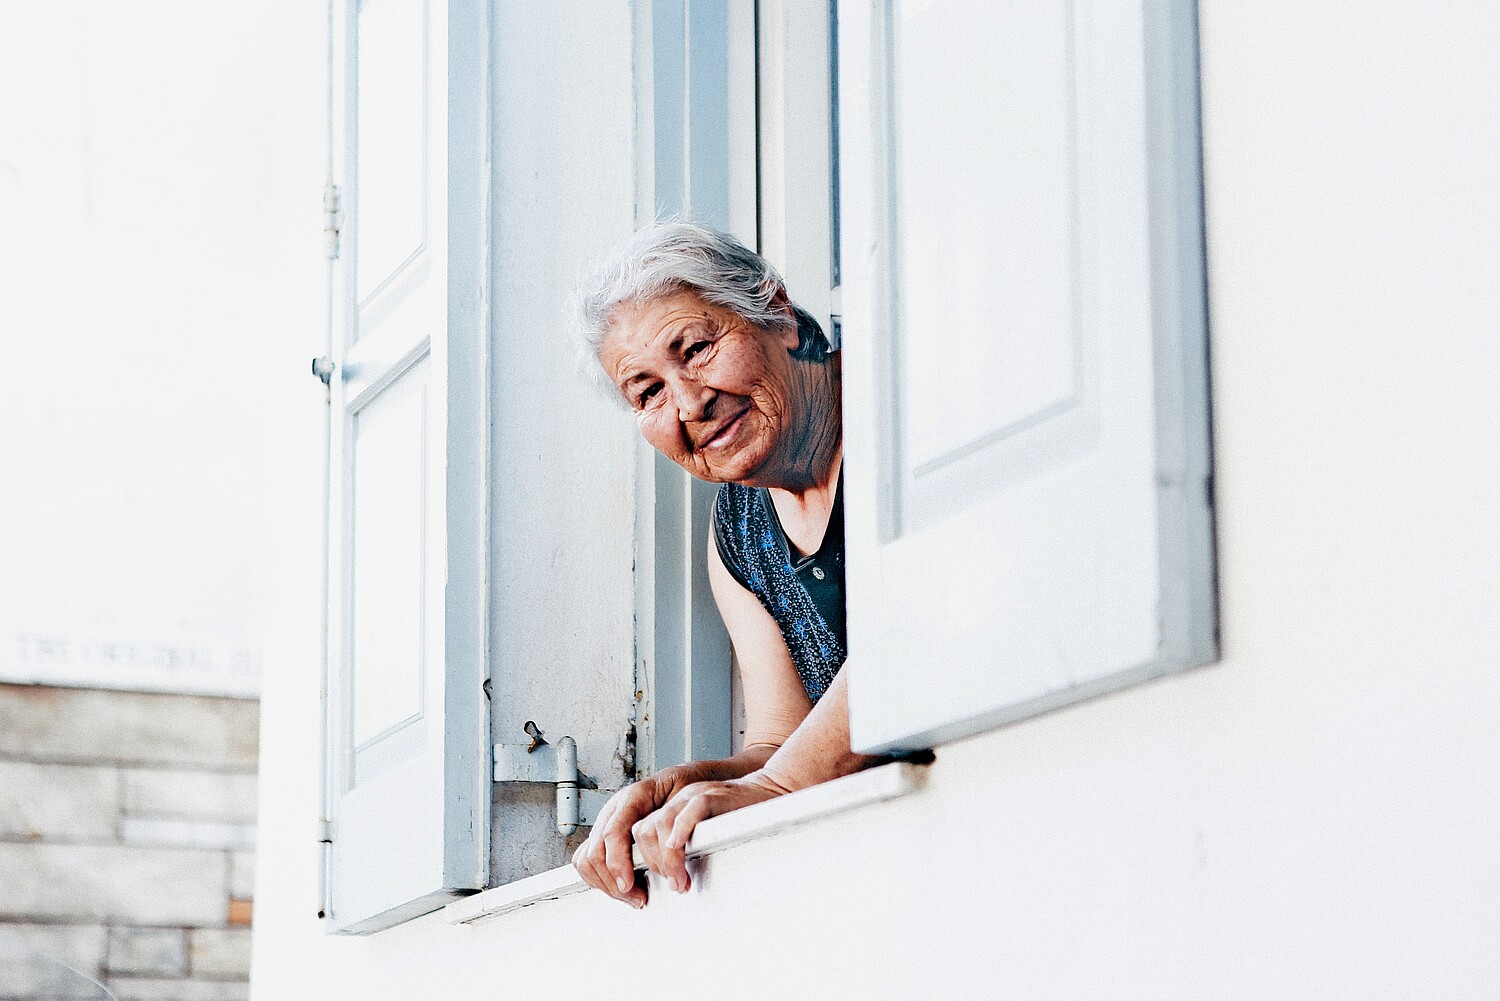 Ältere Menschen, die sich freiwillig engagieren, können für Gemeinden eine wertvolle Ressource sein.